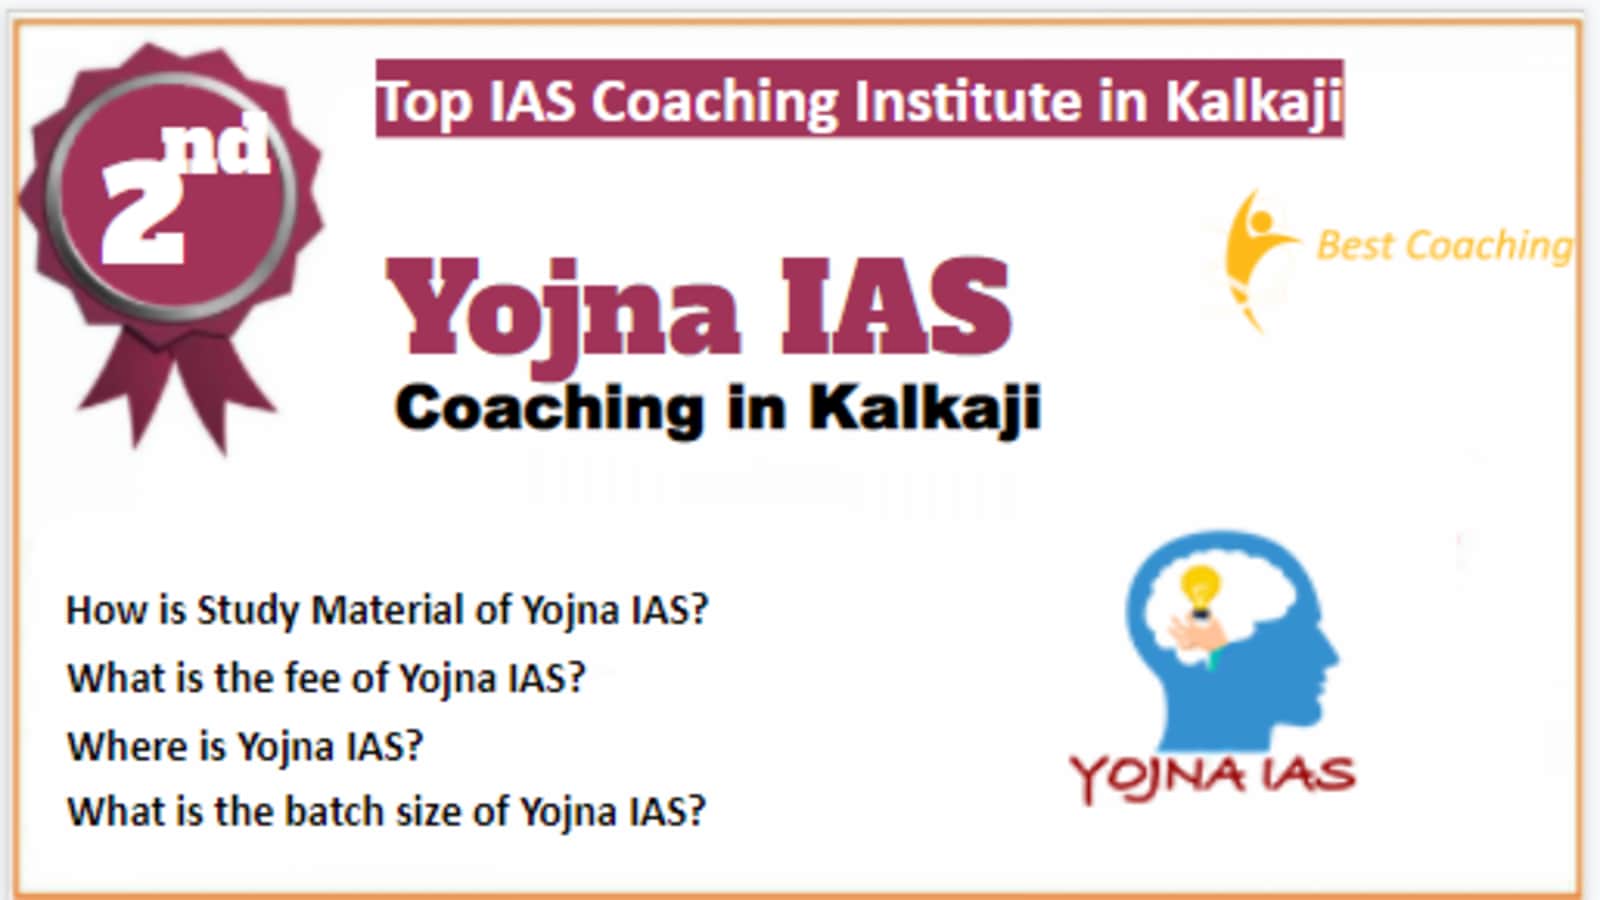 Rank 2 Best Coaching IAS in Kalkaji